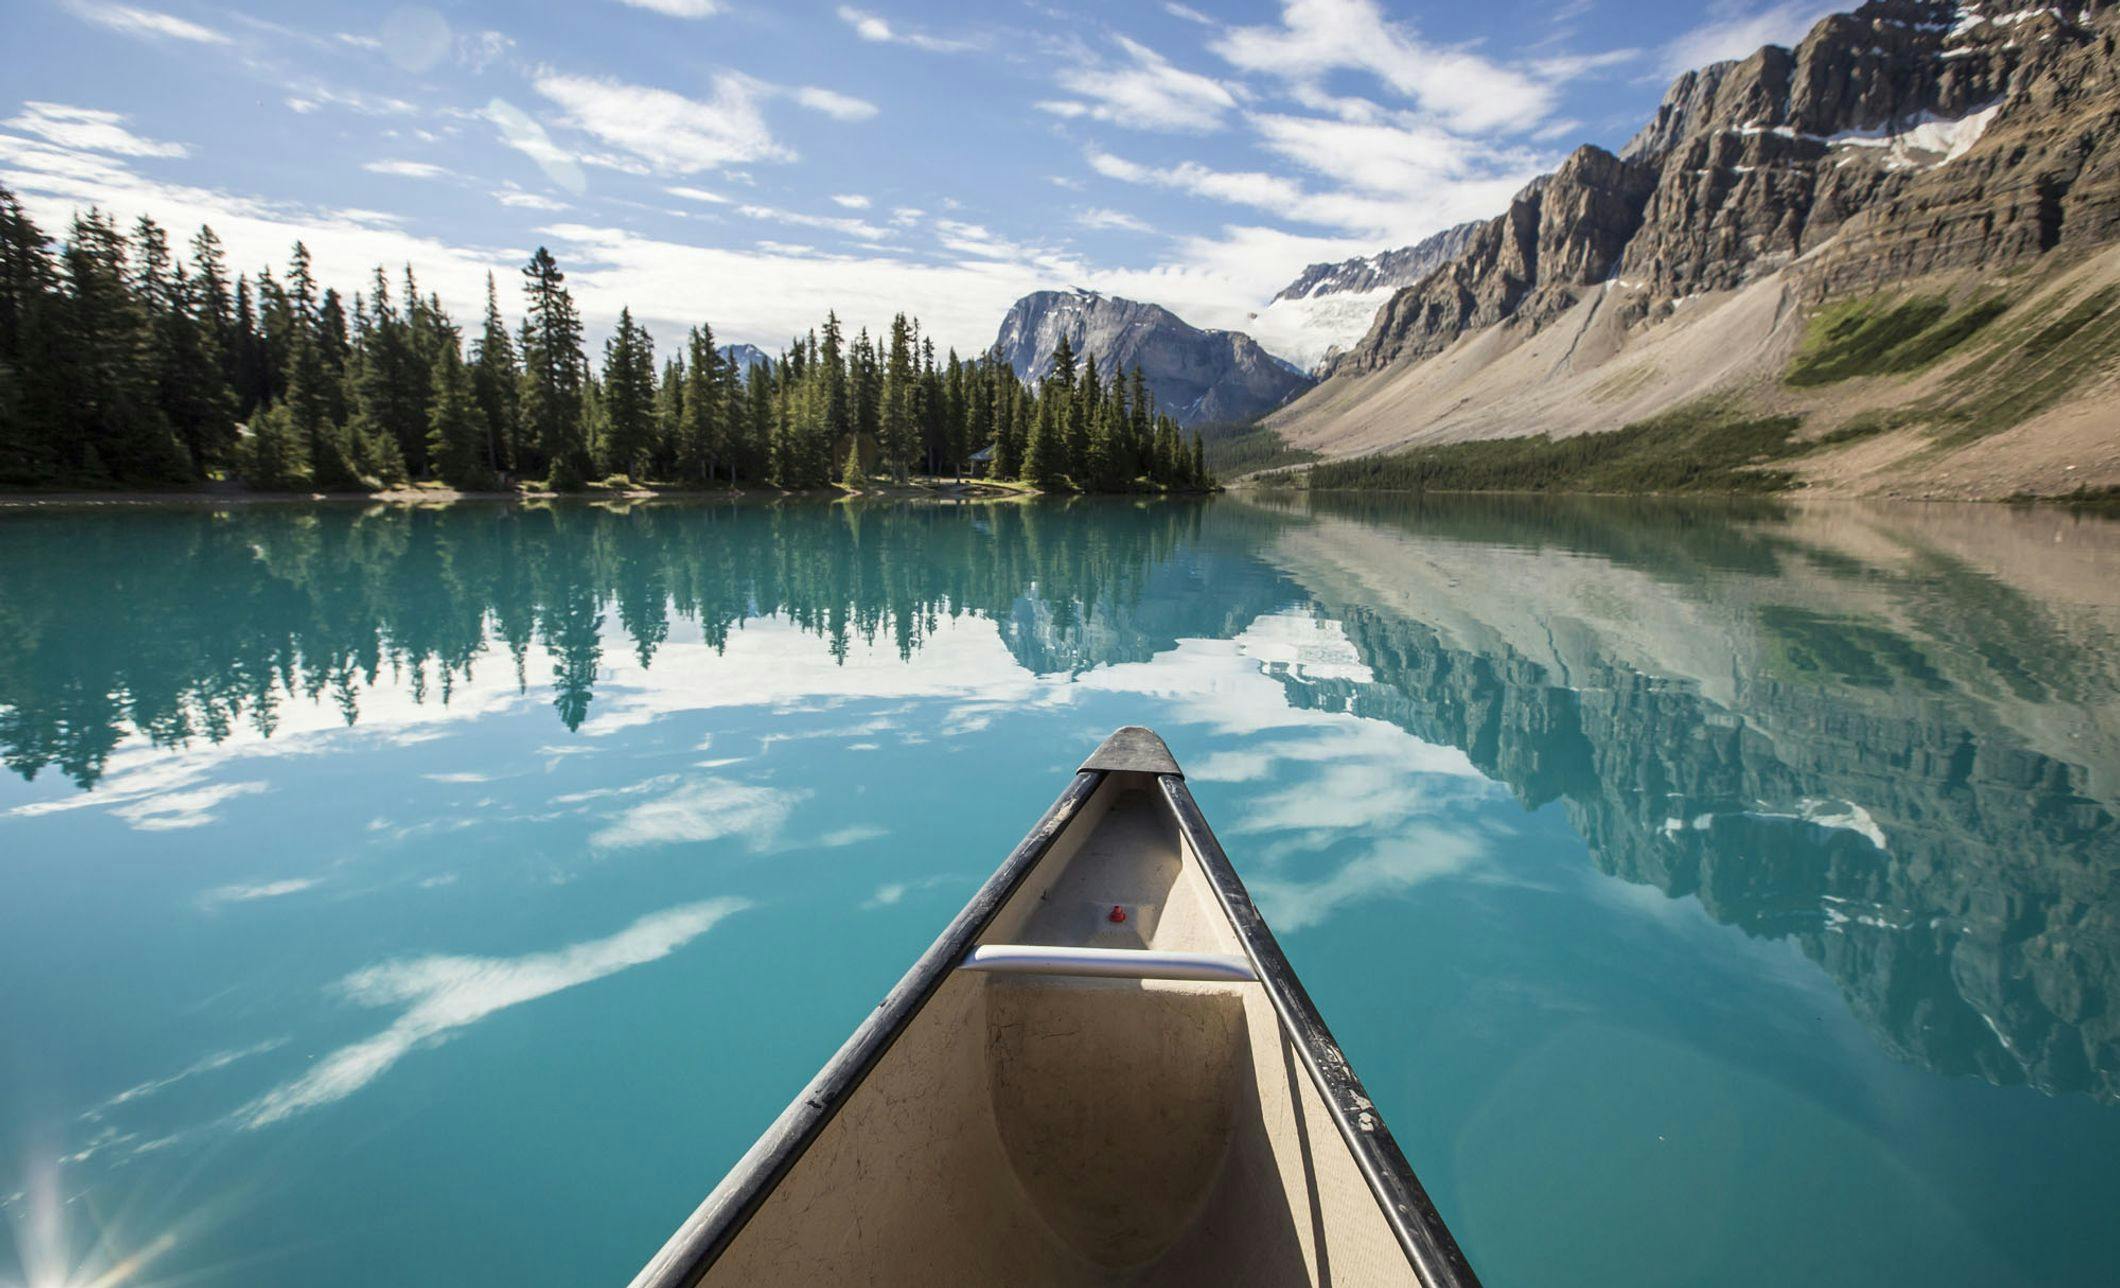 Canoeing Bow Lake Banff National Park Noel Hendrickson